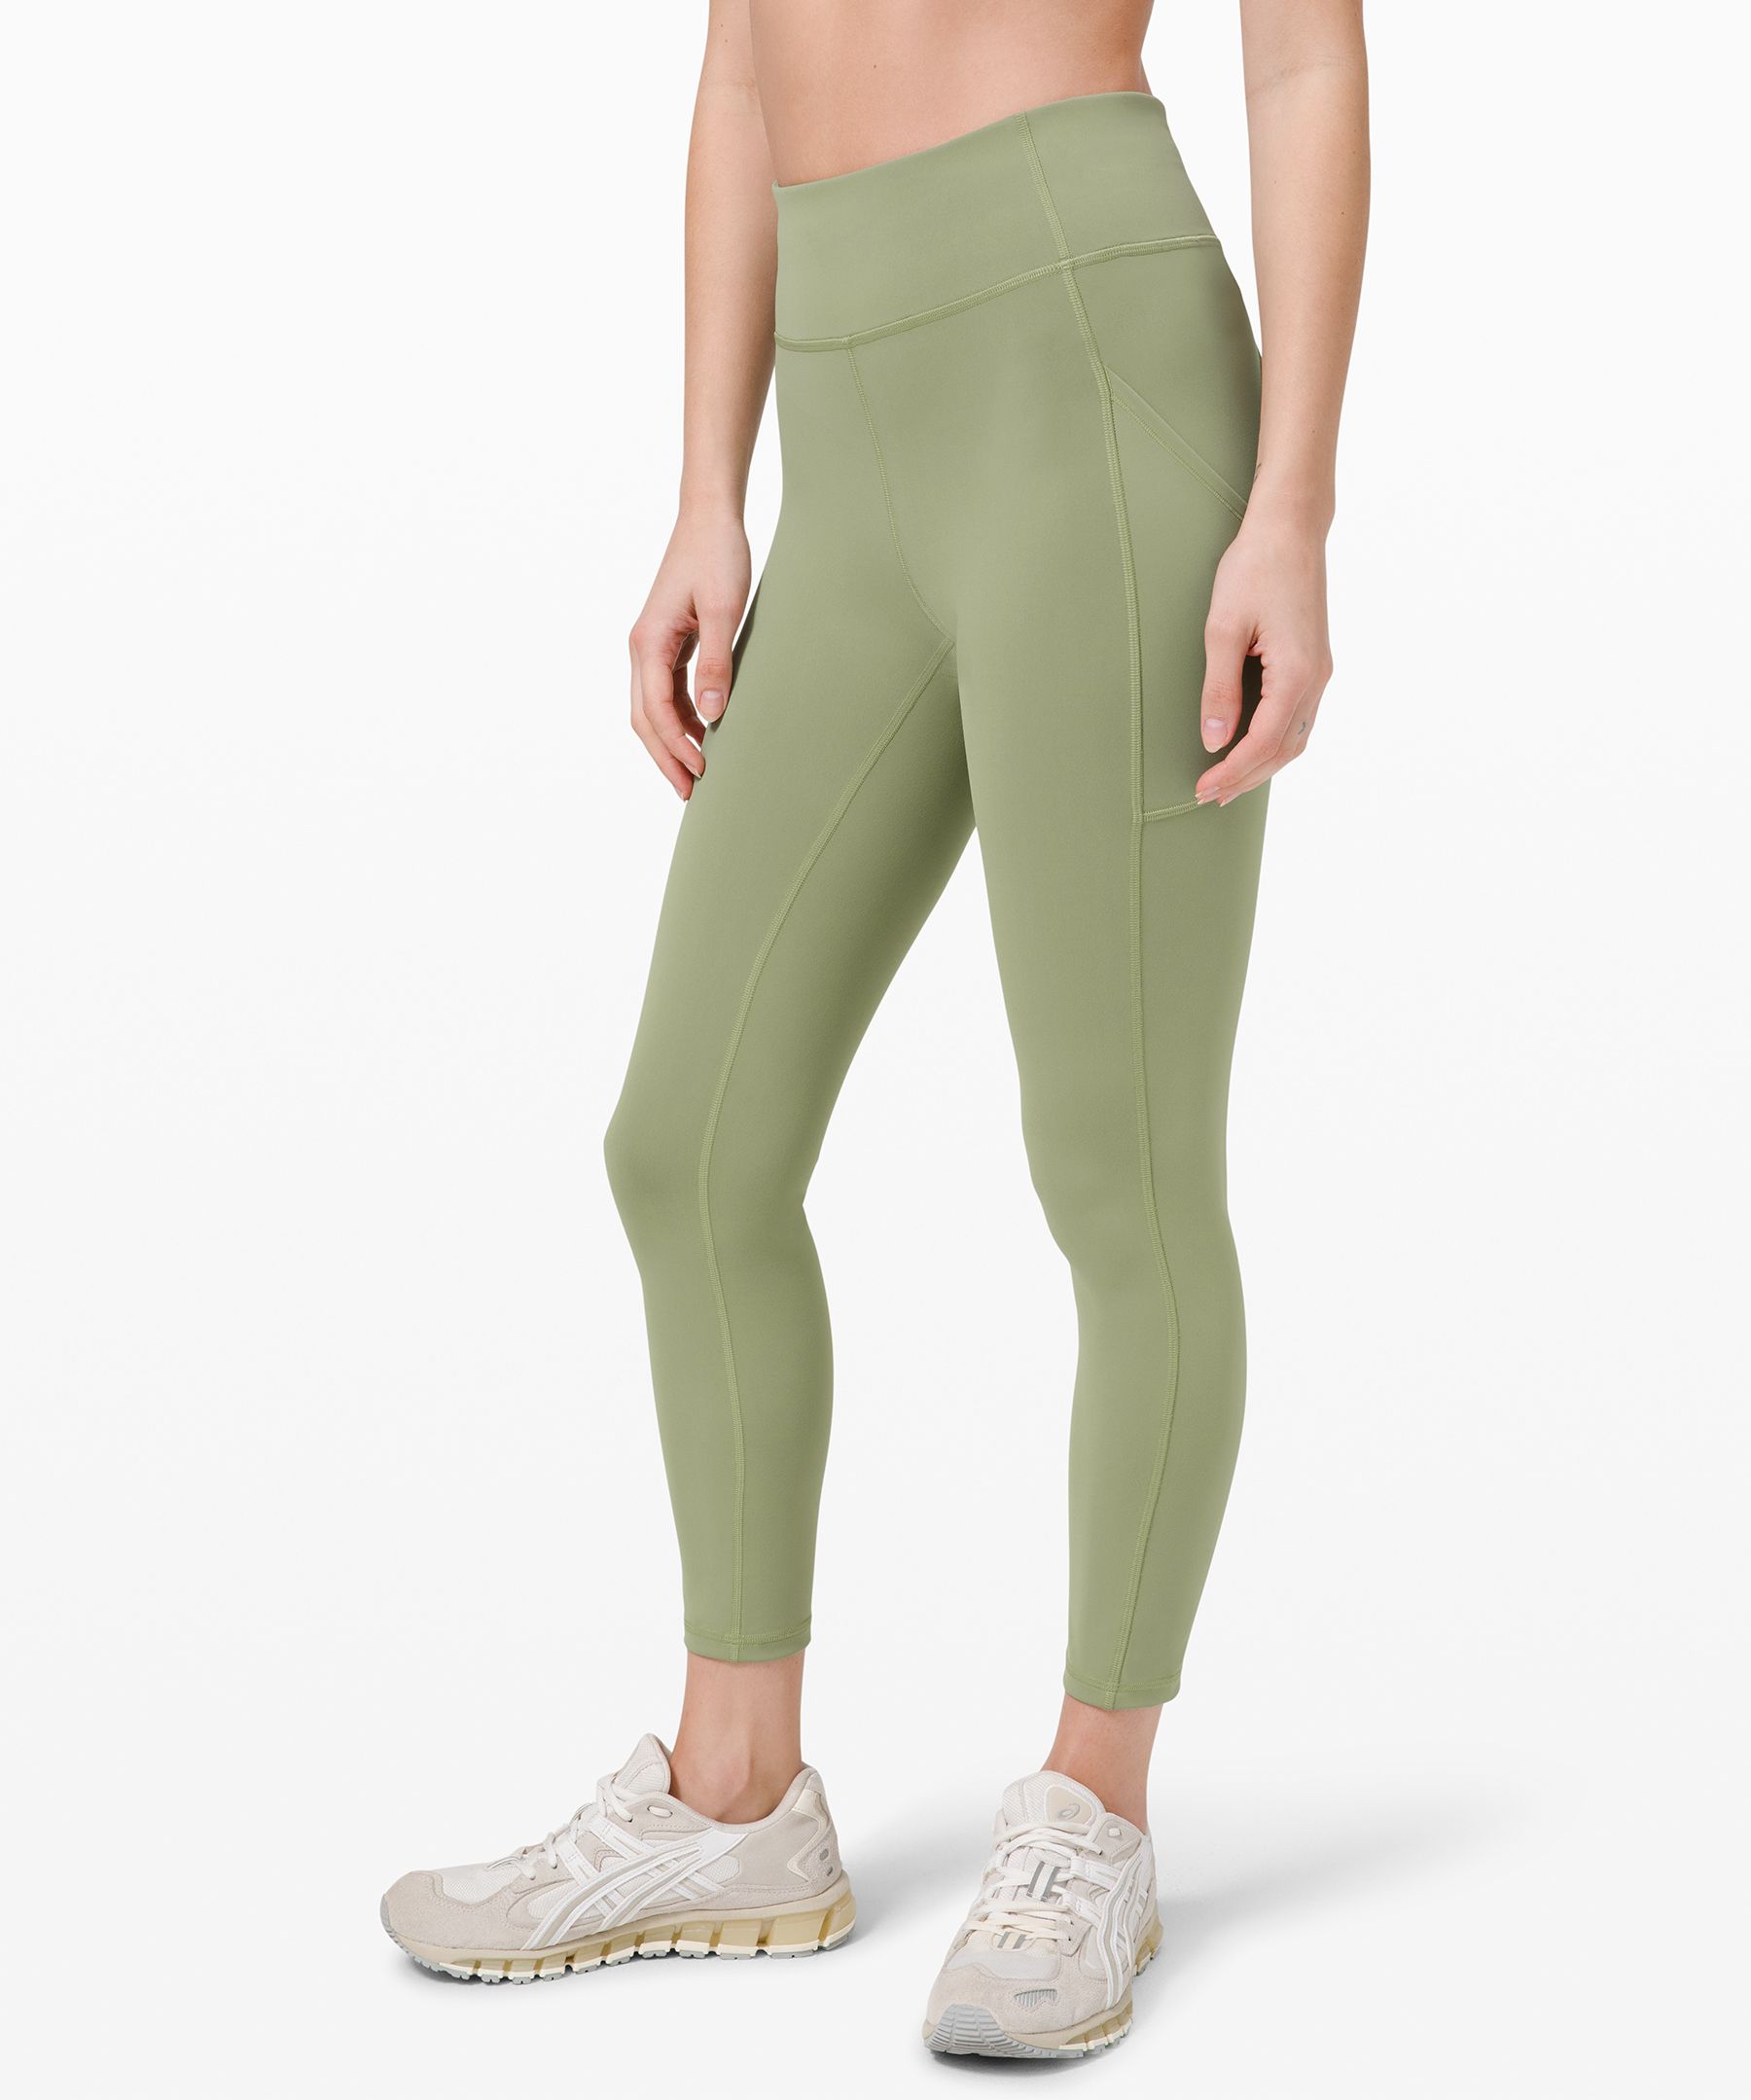 green lululemon leggings